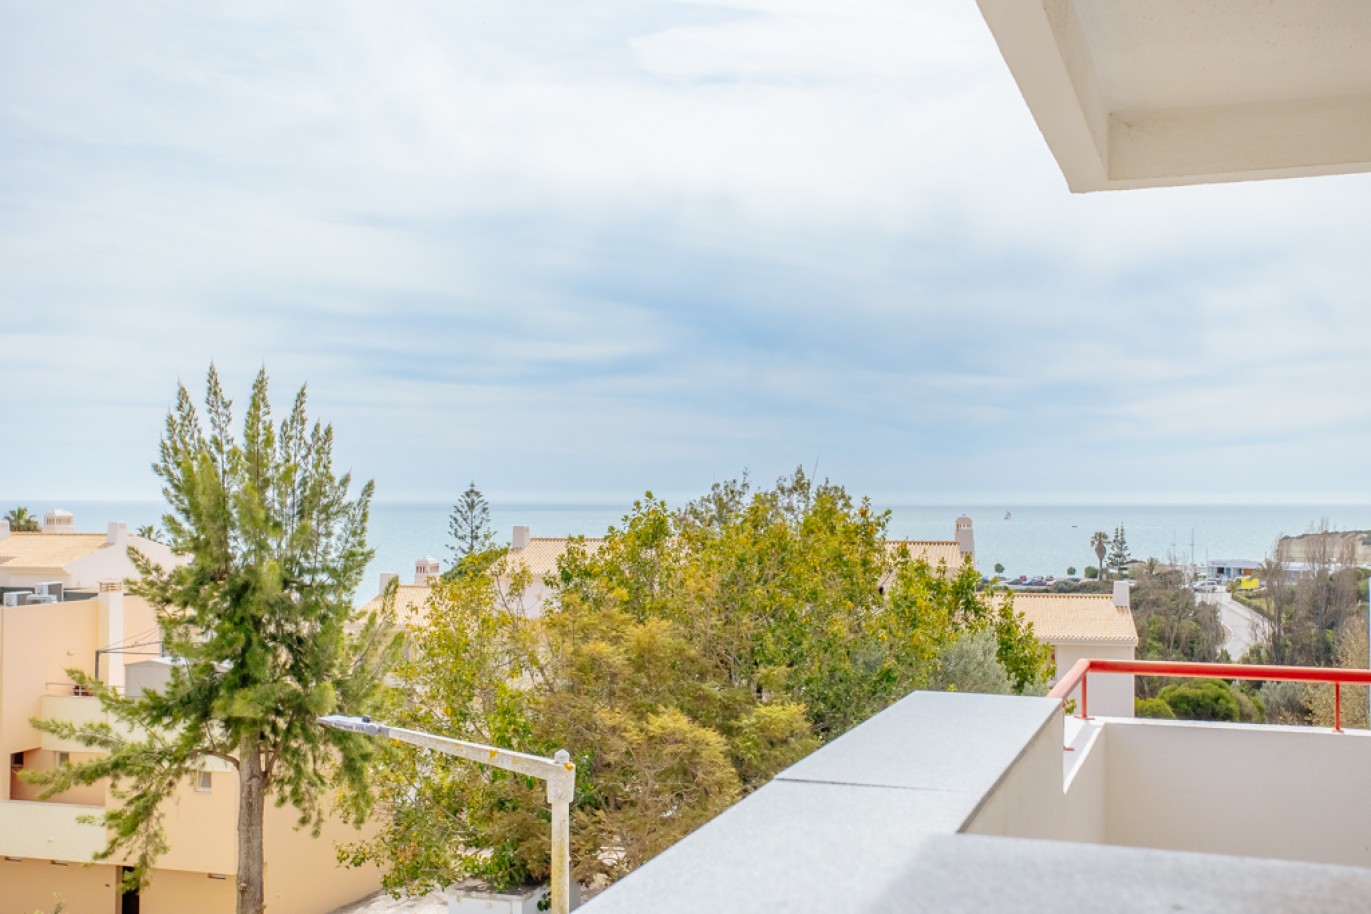 Apartamento com 1+1 quartos, com vista mar, para venda em Porches, Algarve_257026